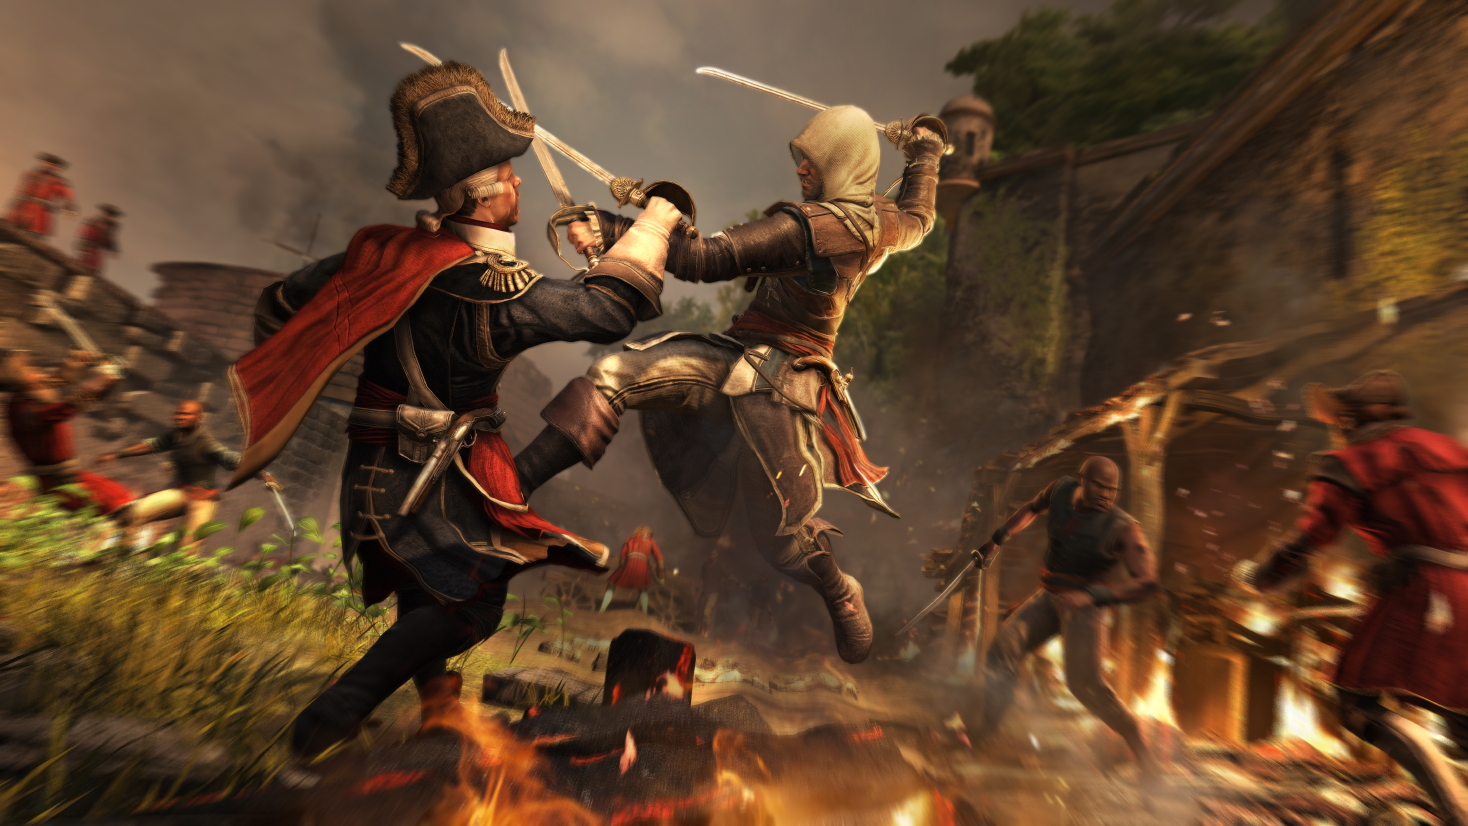 Immagine pubblicata in relazione al seguente contenuto: Nuovi screenshot in-game di Assassin's Creed IV: The Black Flag | Nome immagine: news19883_assassins-creed-4-screenshots_6.jpg